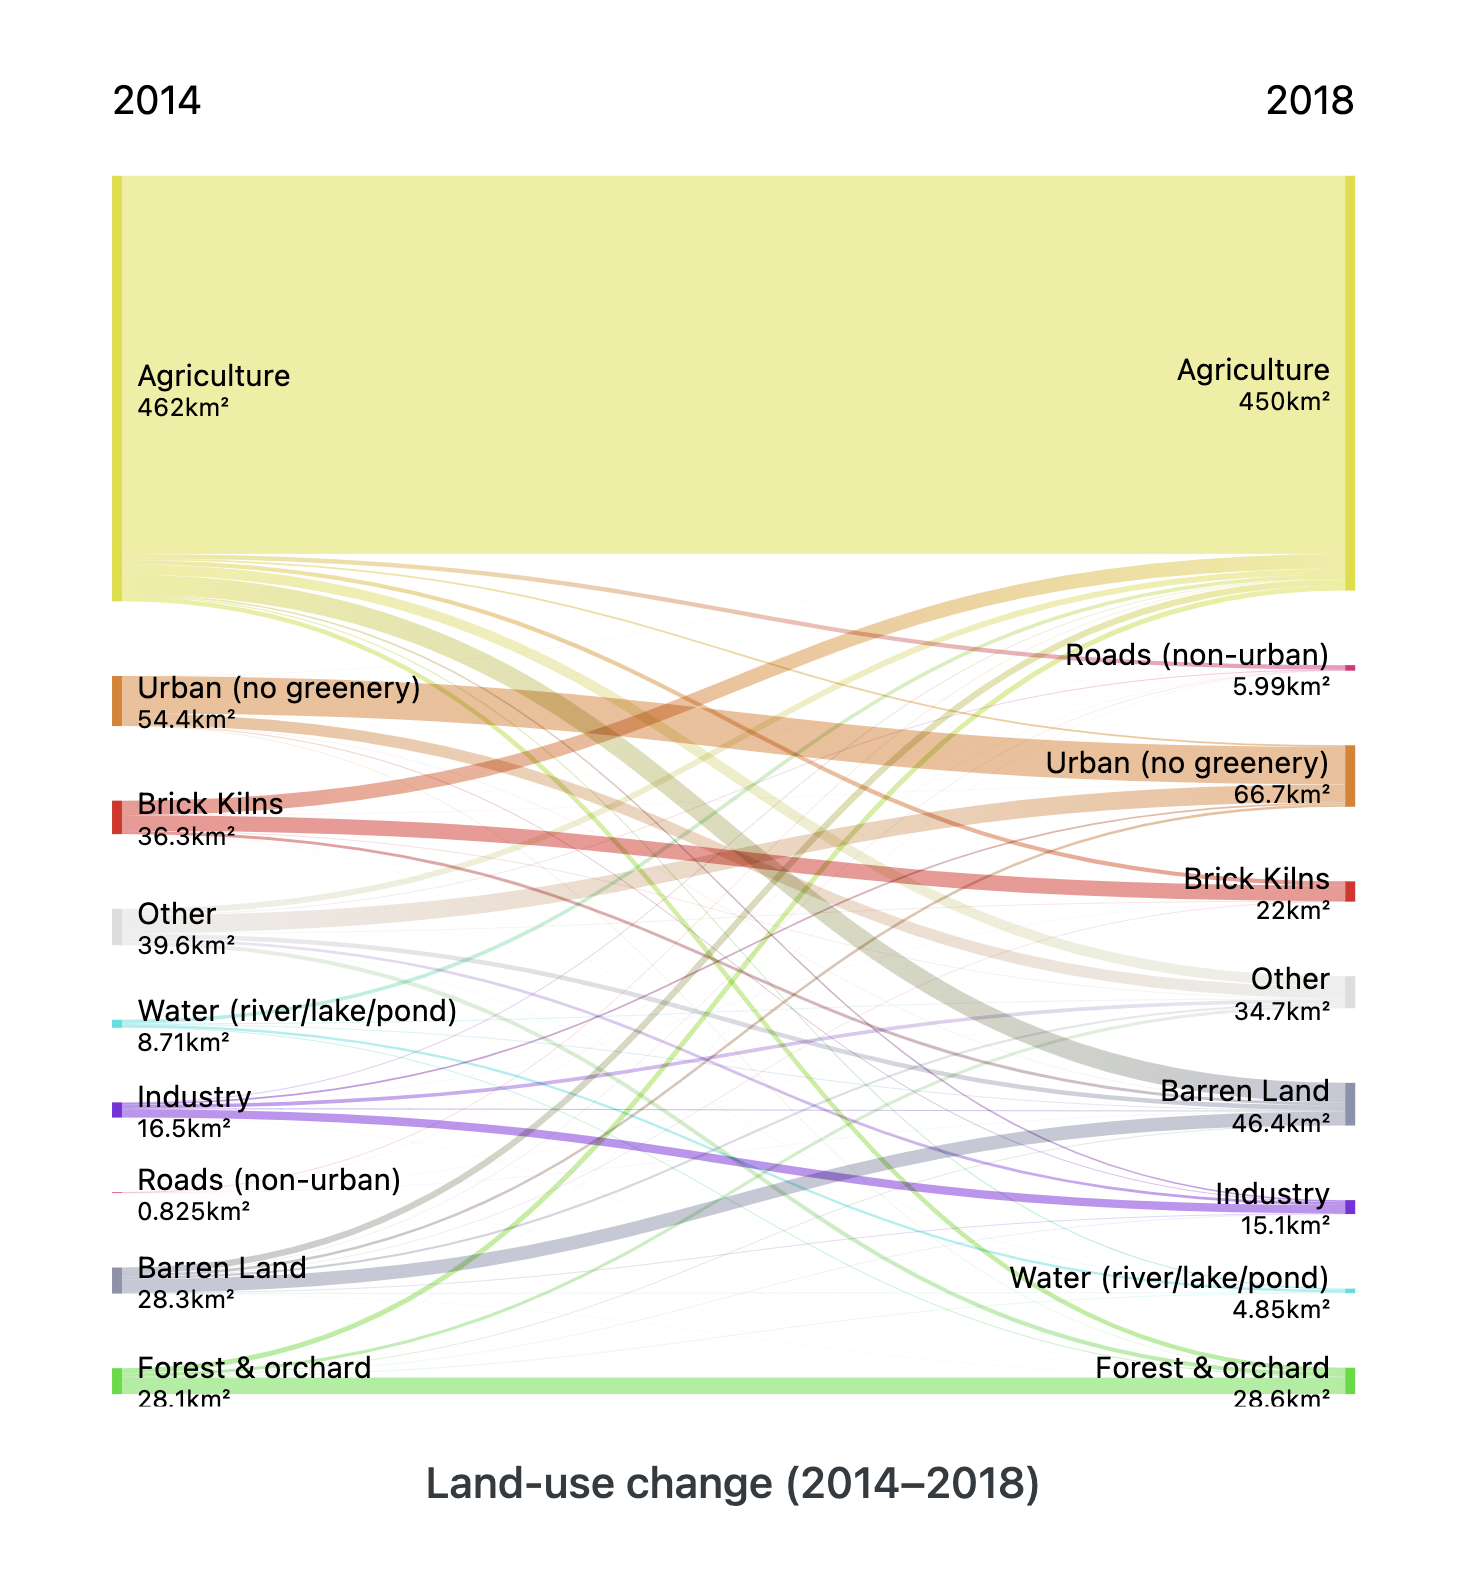 sankey diagram showing land-use change